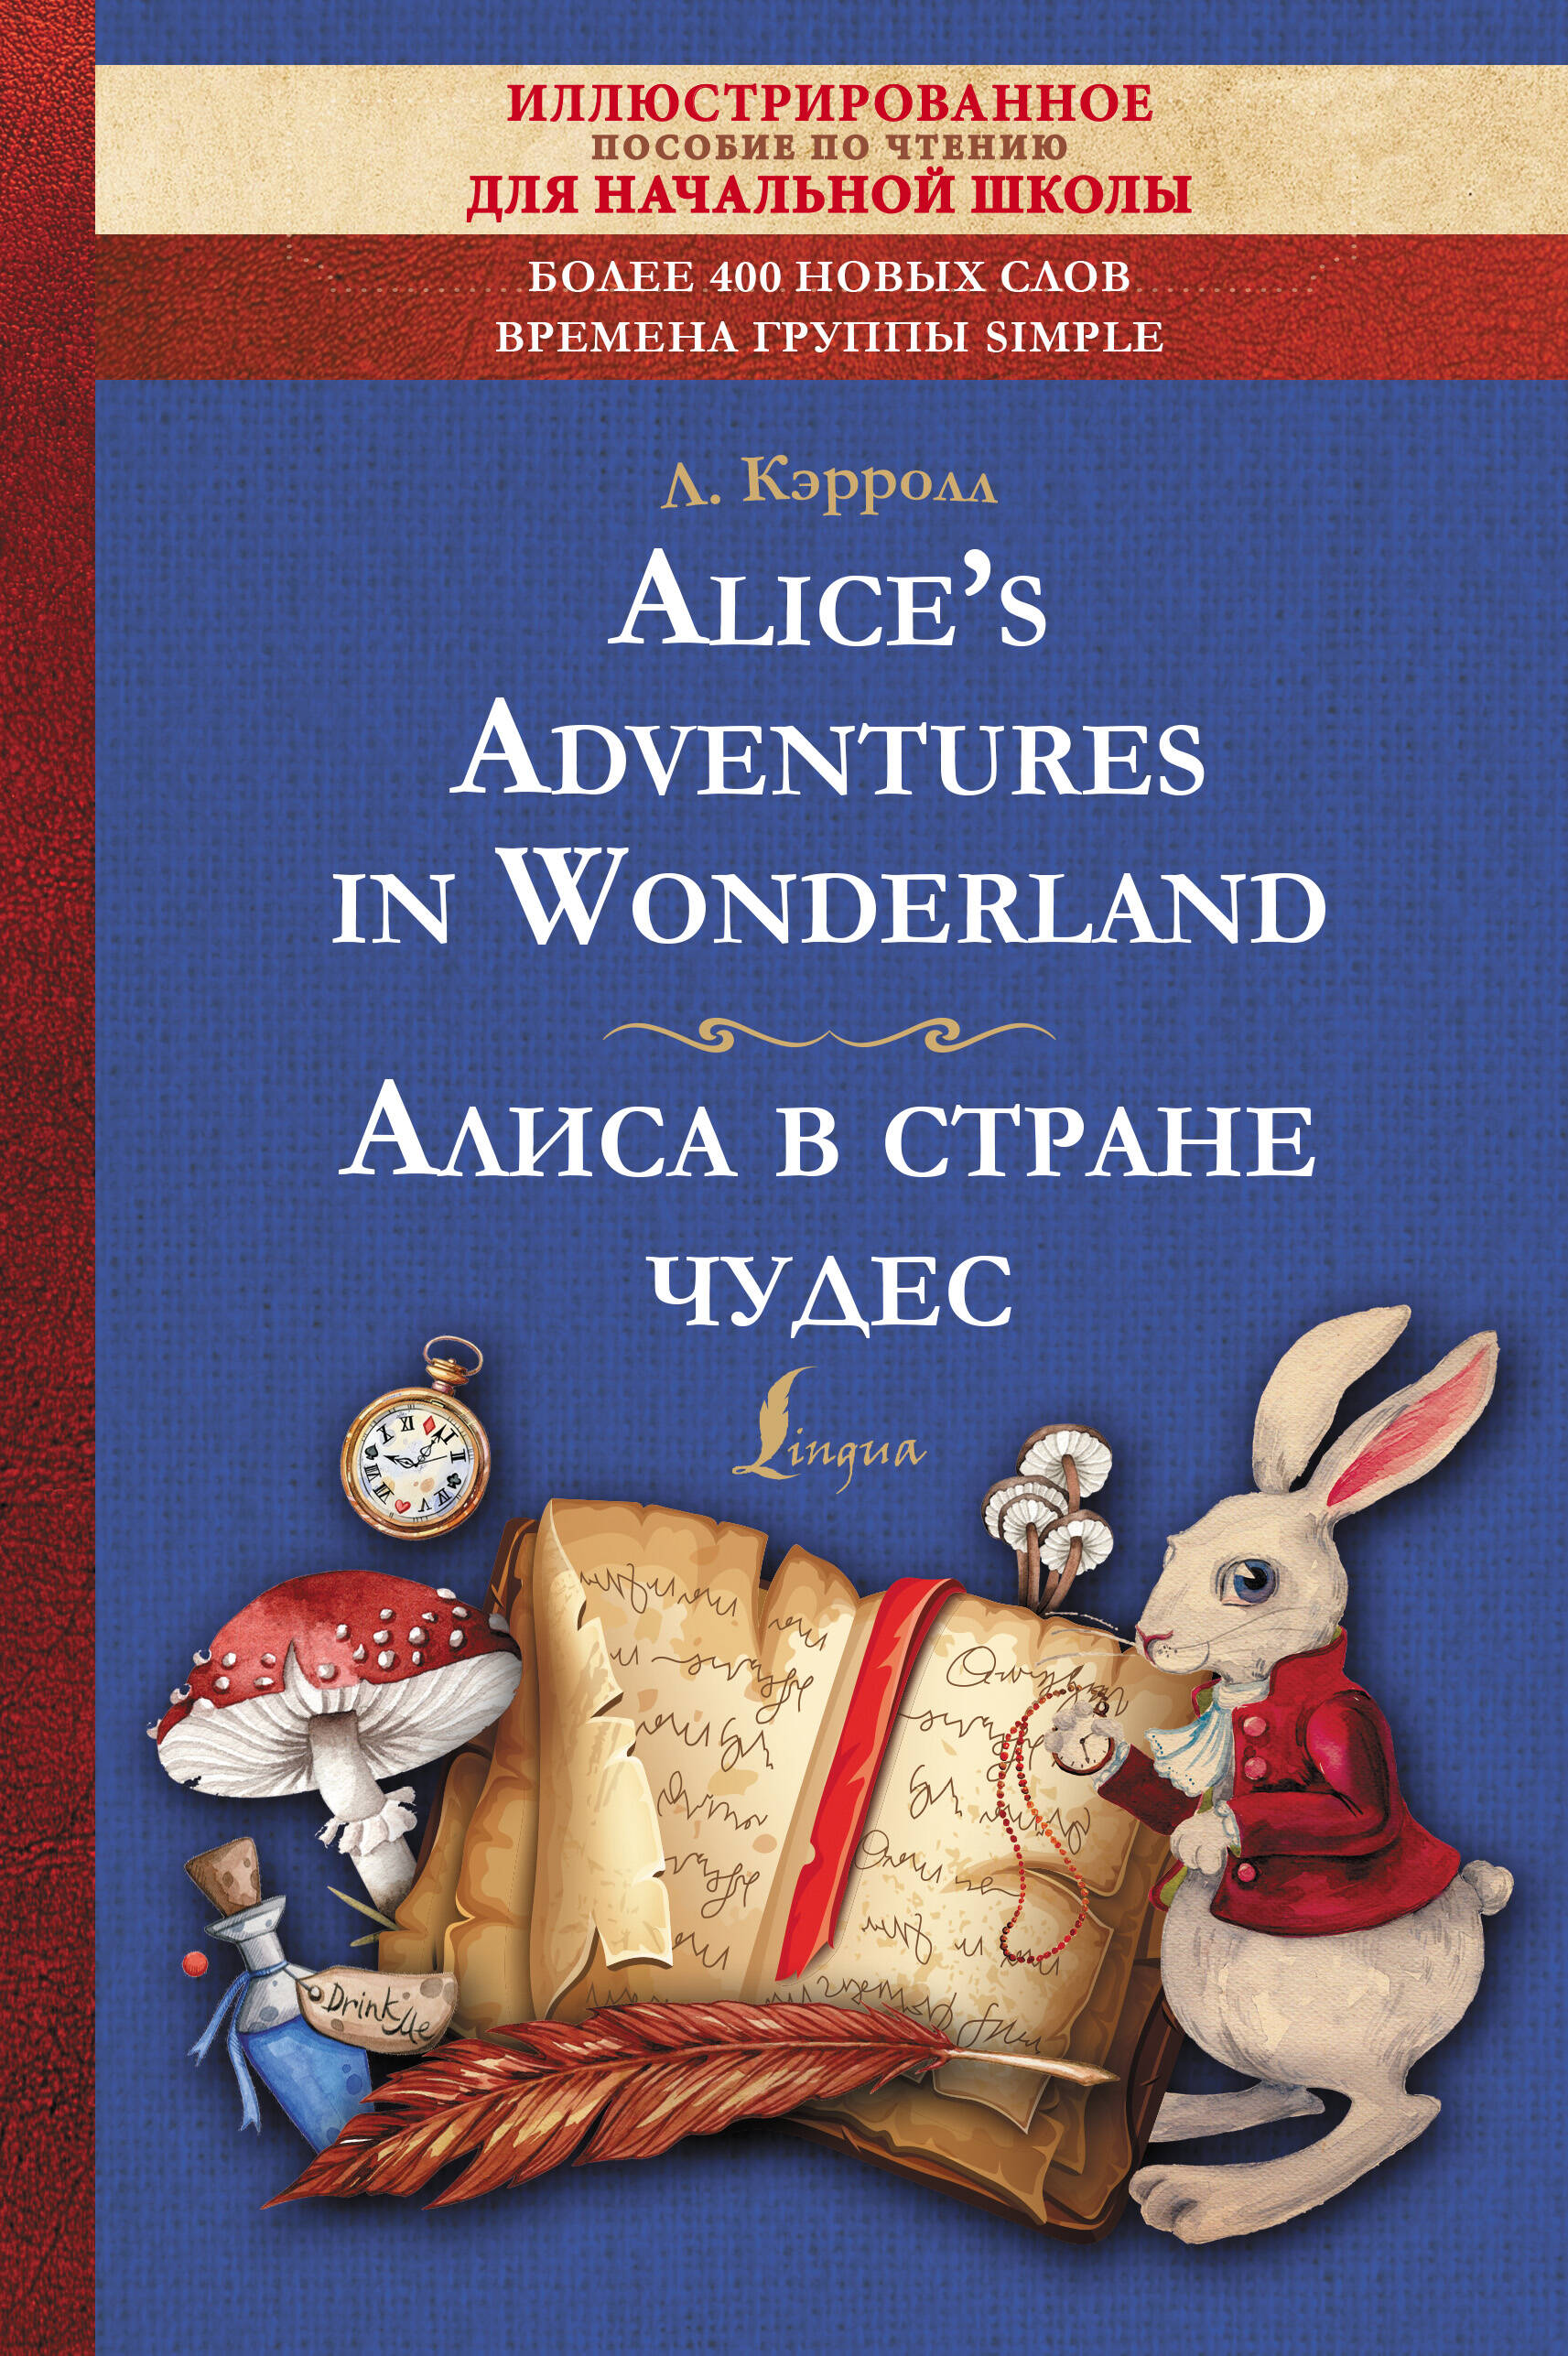 Кэрролл Льюис Alices Adventures in Wonderland = Алиса в стране чудес. Иллюстрированное пособие для чтения кэрролл льюис алиса в стране чудес alices adventures in wonderland